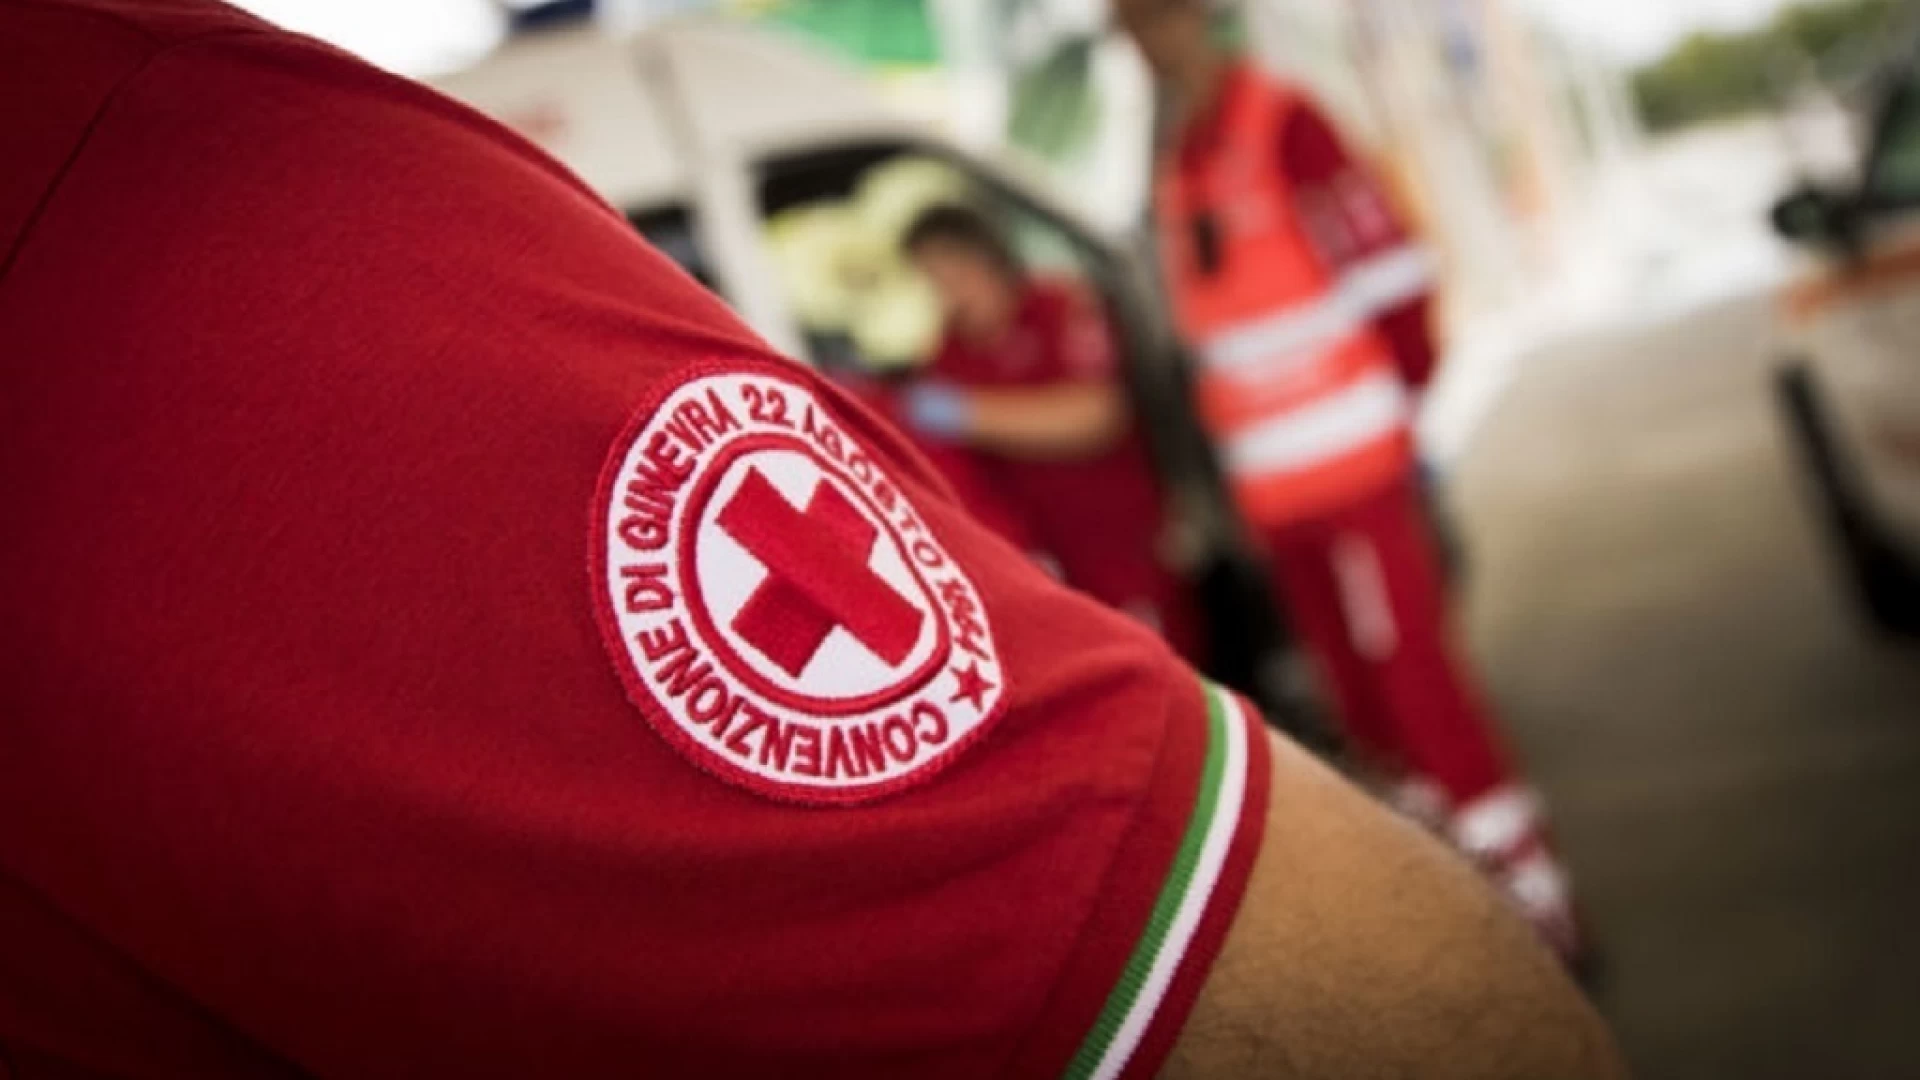 Croce Rossa Isernia, ultimata la prima fase della campagna vaccinale anti-covid a Venafro. Al via le inoculazioni a domicilio in altri cinque comuni della provincia